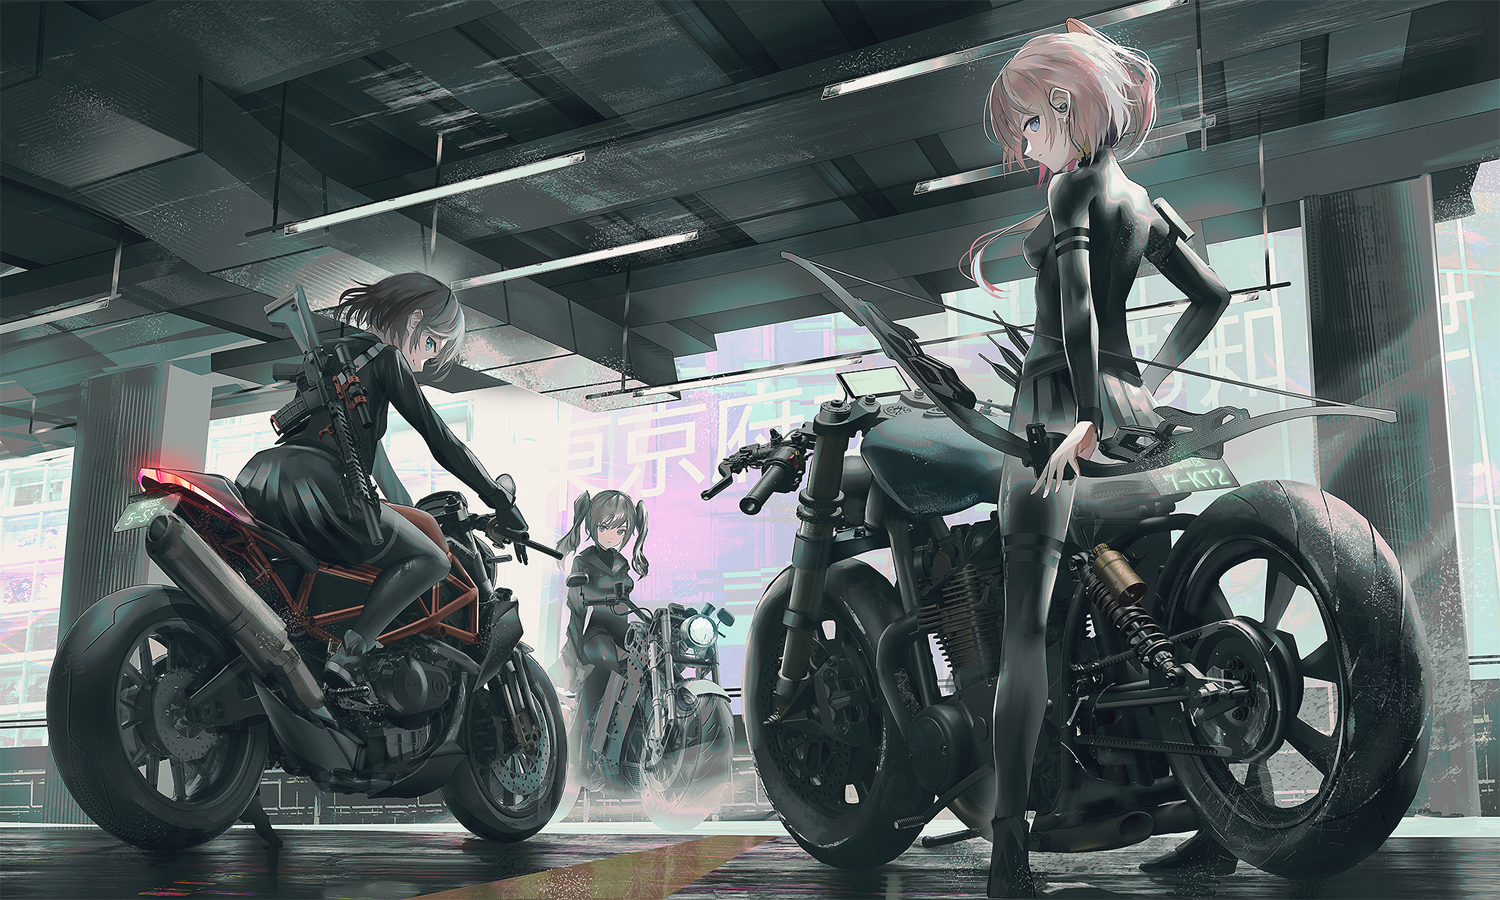 Dynamic Anime Style 8k Motorbike with Bold Black Lines Stock Image - Image  of stylish, caricature: 303201805